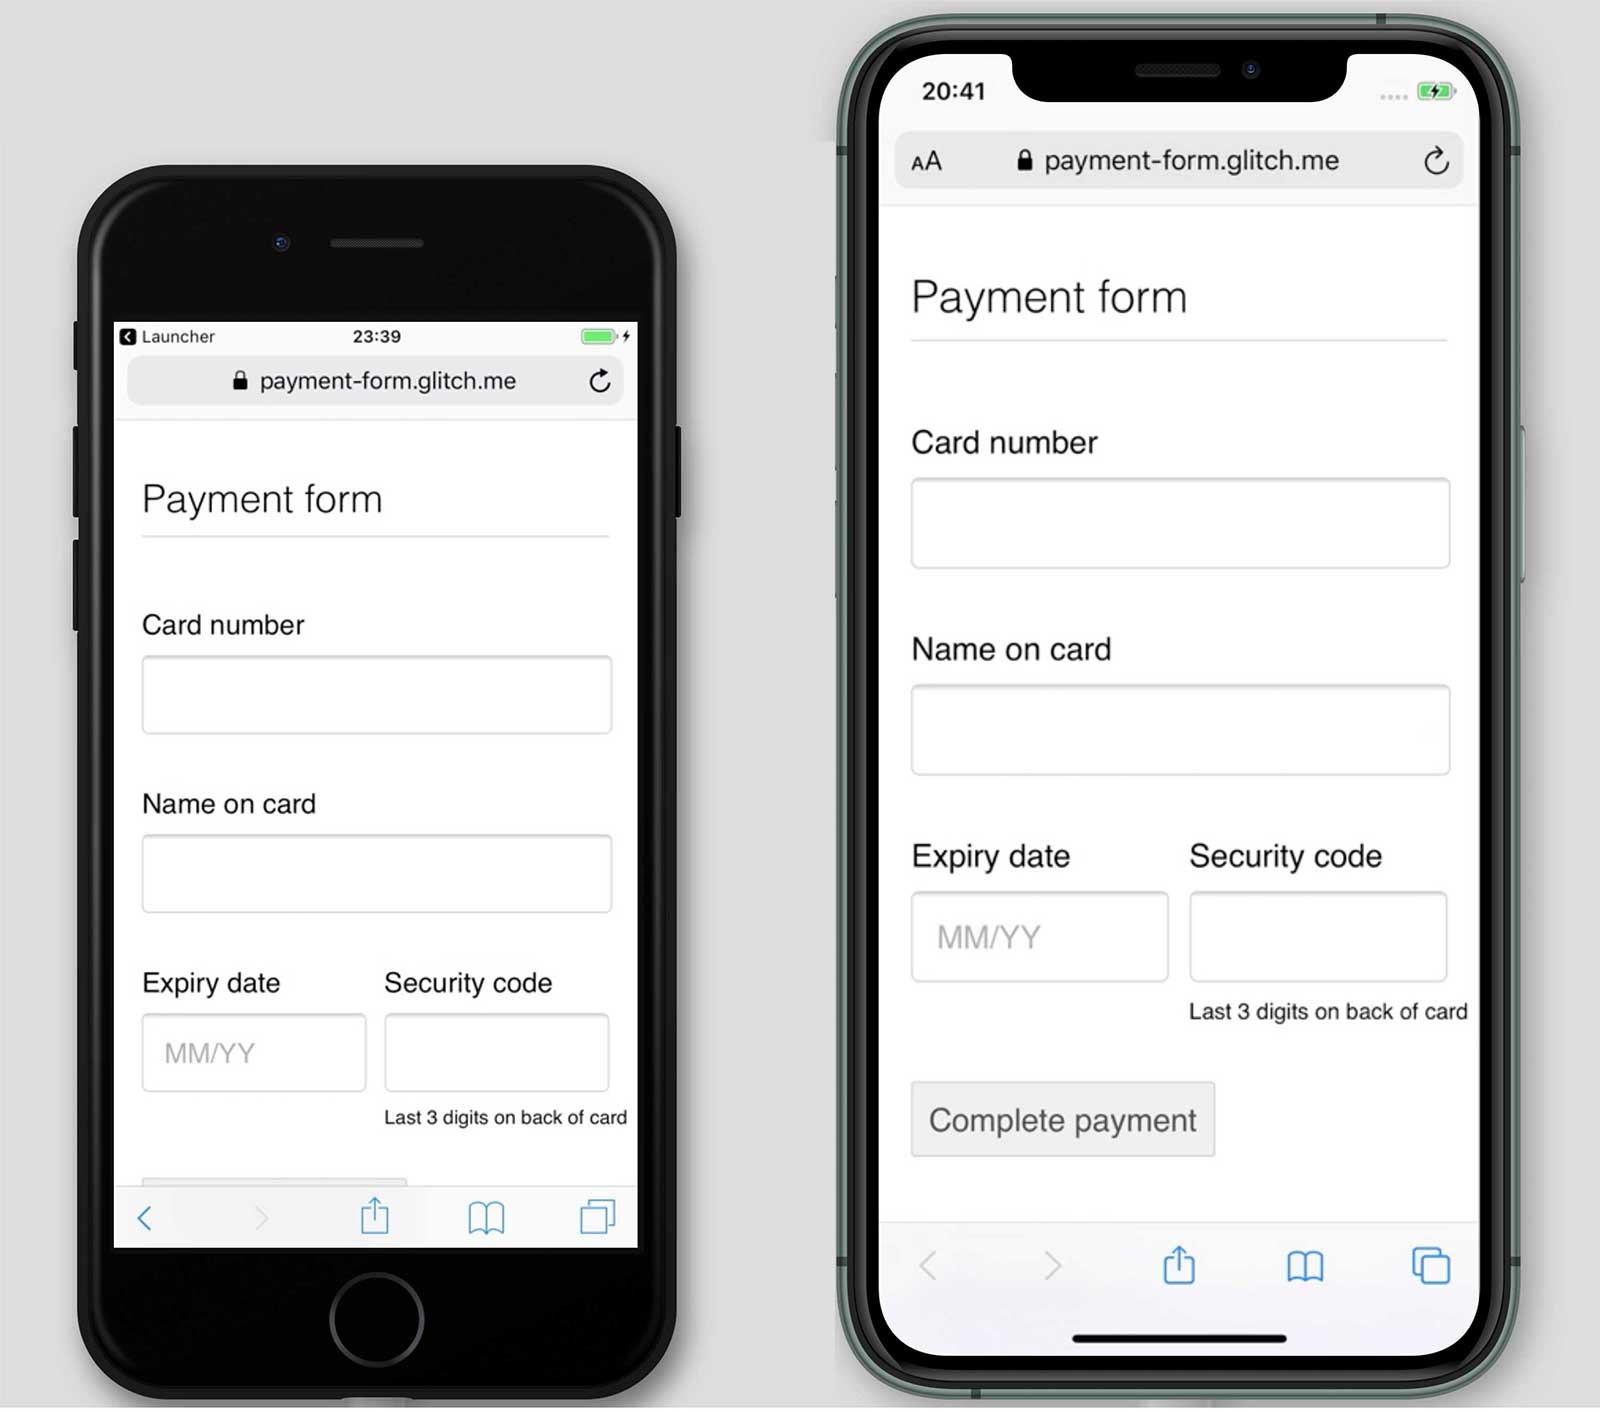 একটি পেমেন্ট ফর্মের স্ক্রিনশট, payment-form.glitch.me, iPhone 7 এবং 11 এ। সম্পূর্ণ পেমেন্ট বোতামটি iPhone 11 এ দেখানো হয়েছে কিন্তু 7 এ নয়